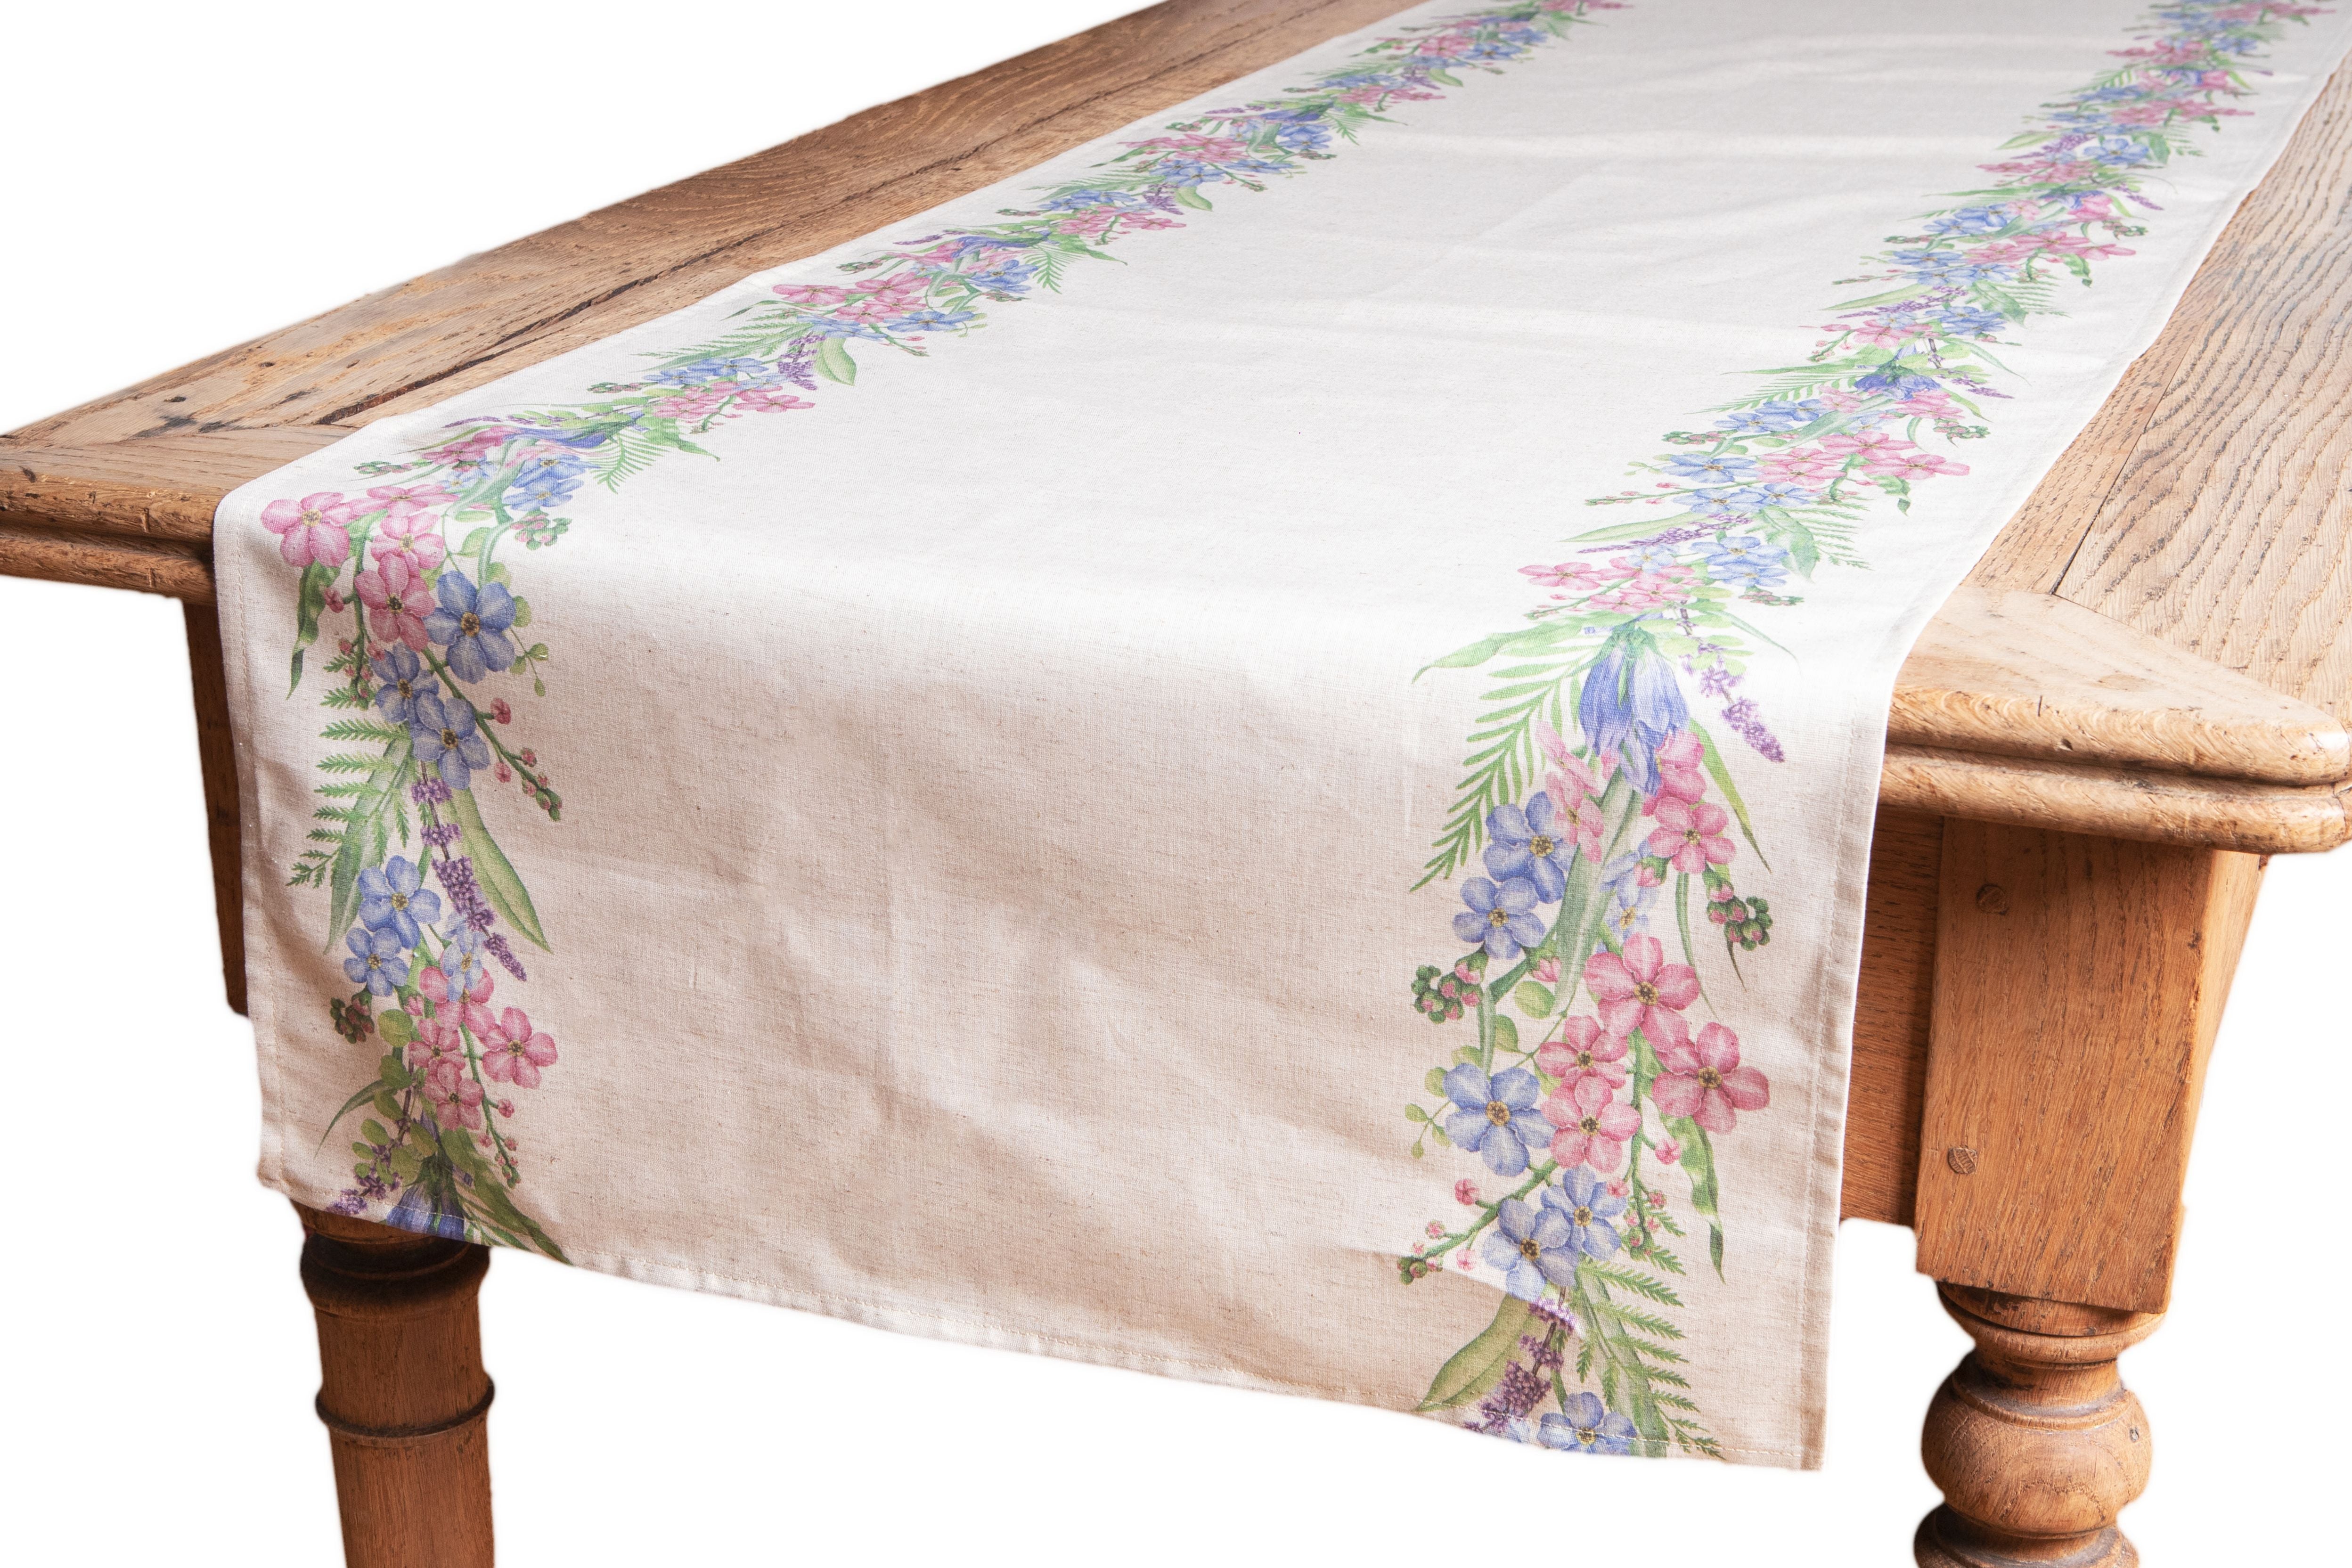 Runner da tavola in misto lino stampa floreale fiori morbido resistente elegante made in italy  FIORI DI CAMPO - Vanita di raso